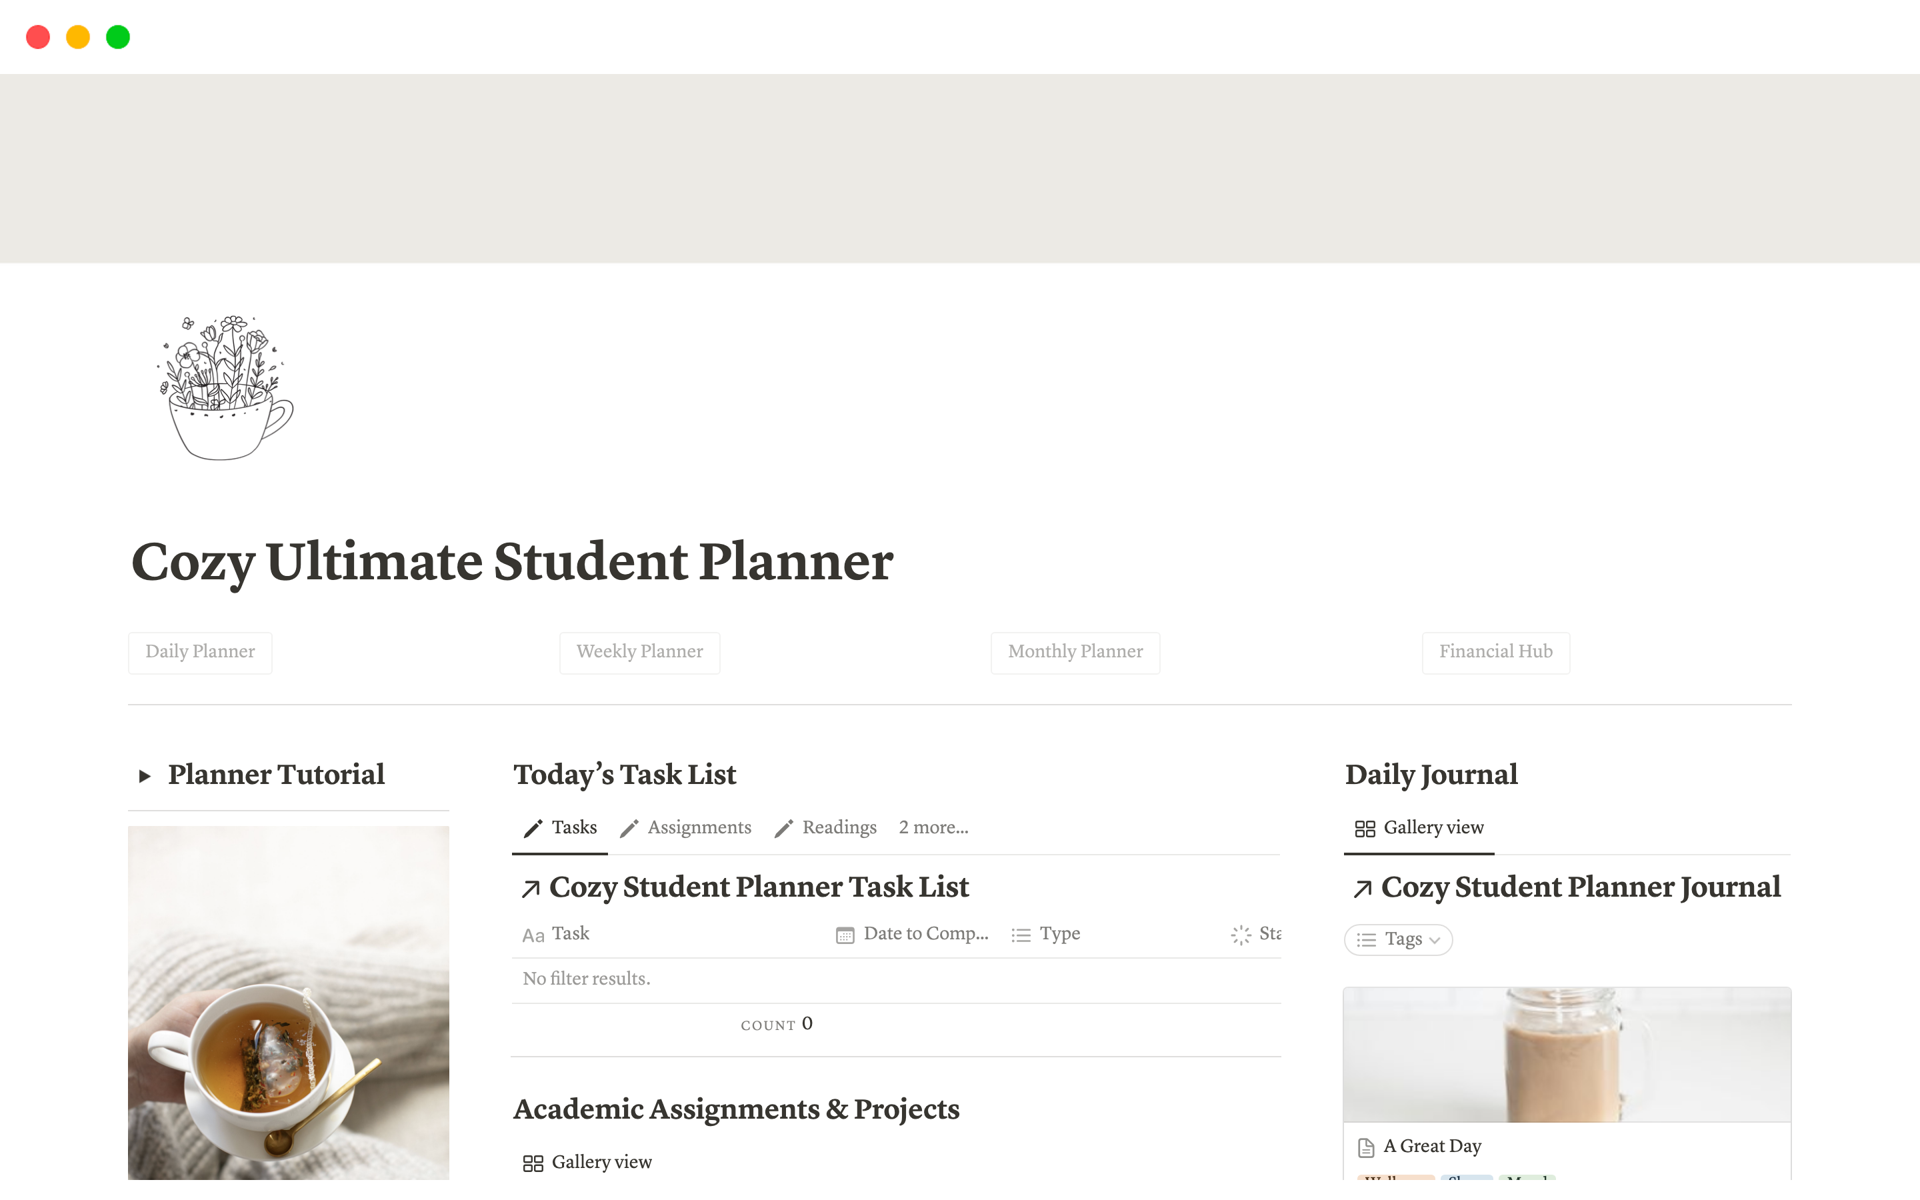 Cozy Ultimate Student Planner님의 템플릿 미리보기